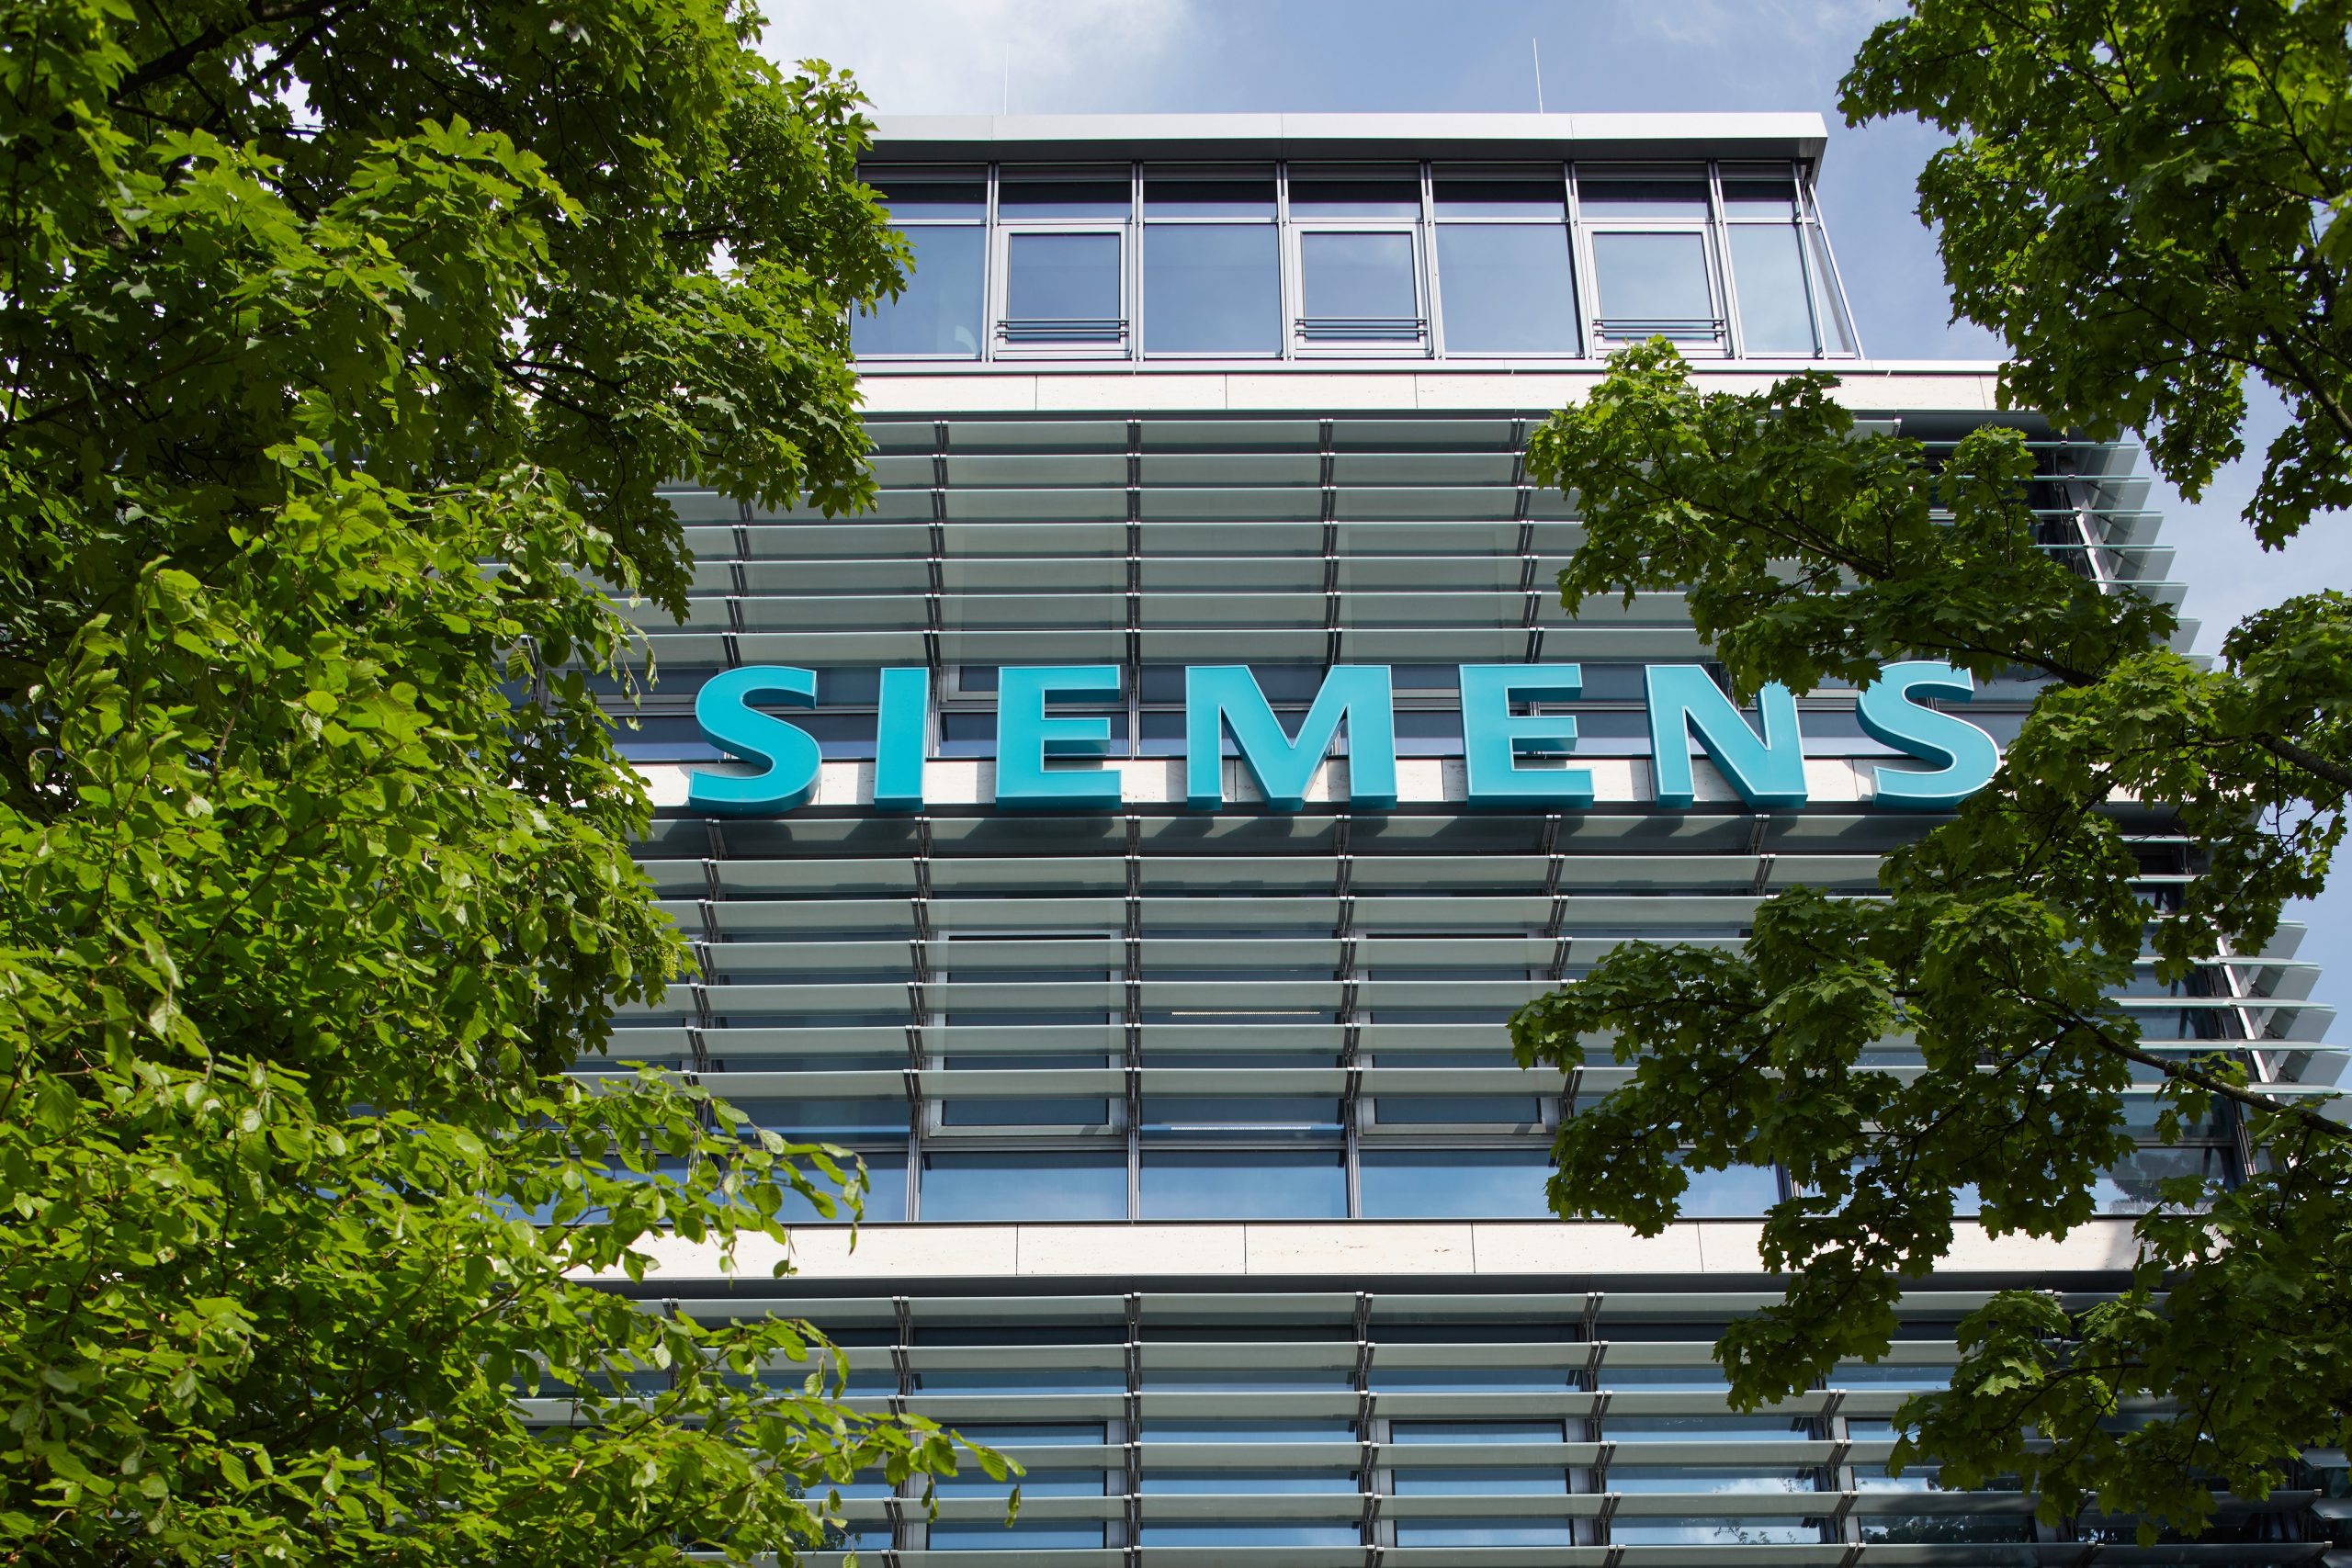 شرکت زیمنس Siemens